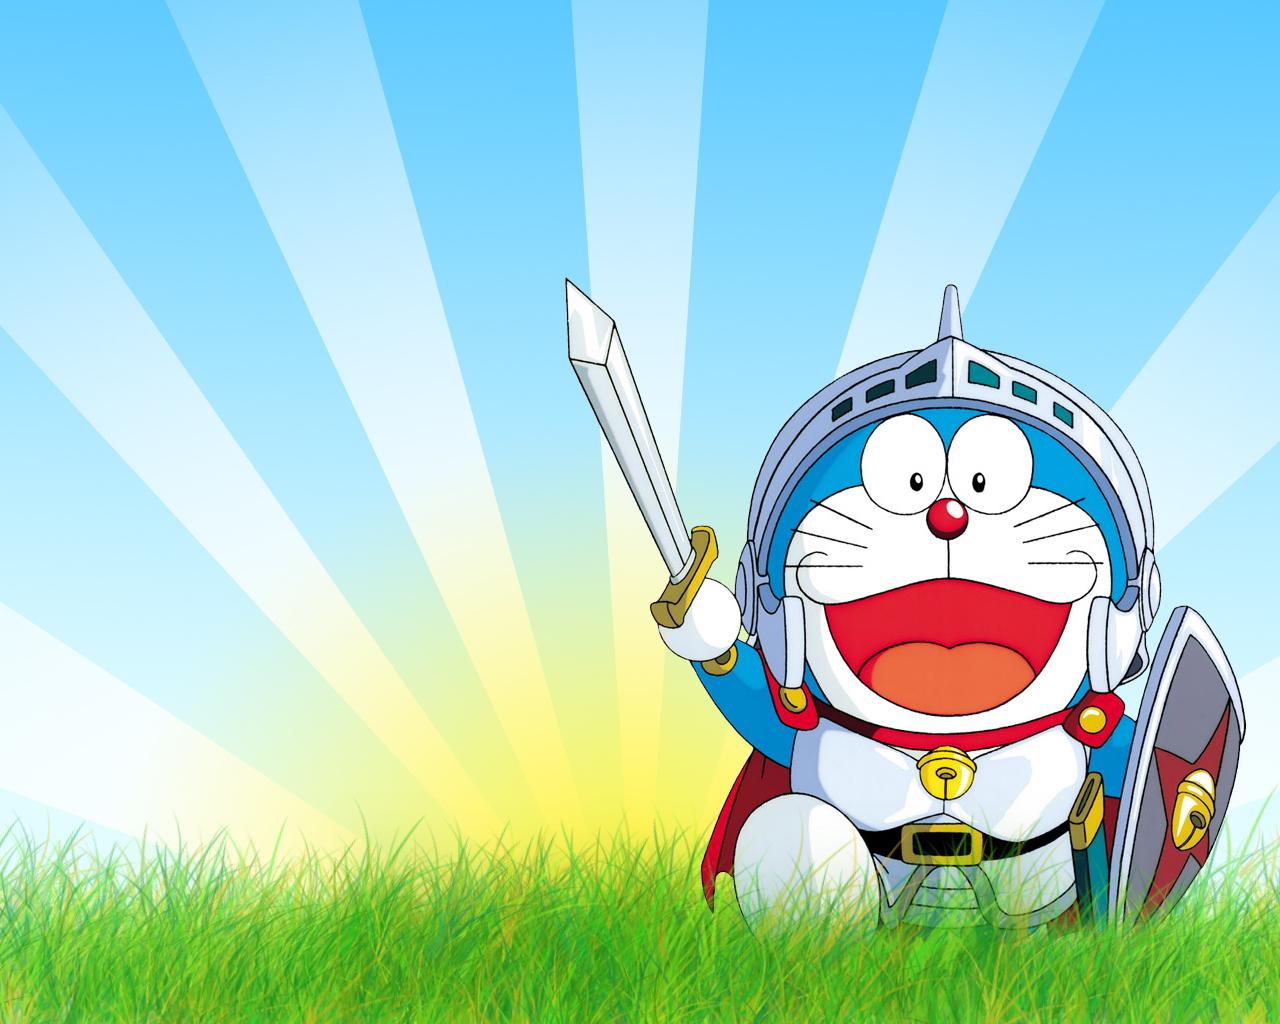 Gambar Animasi Doraemon